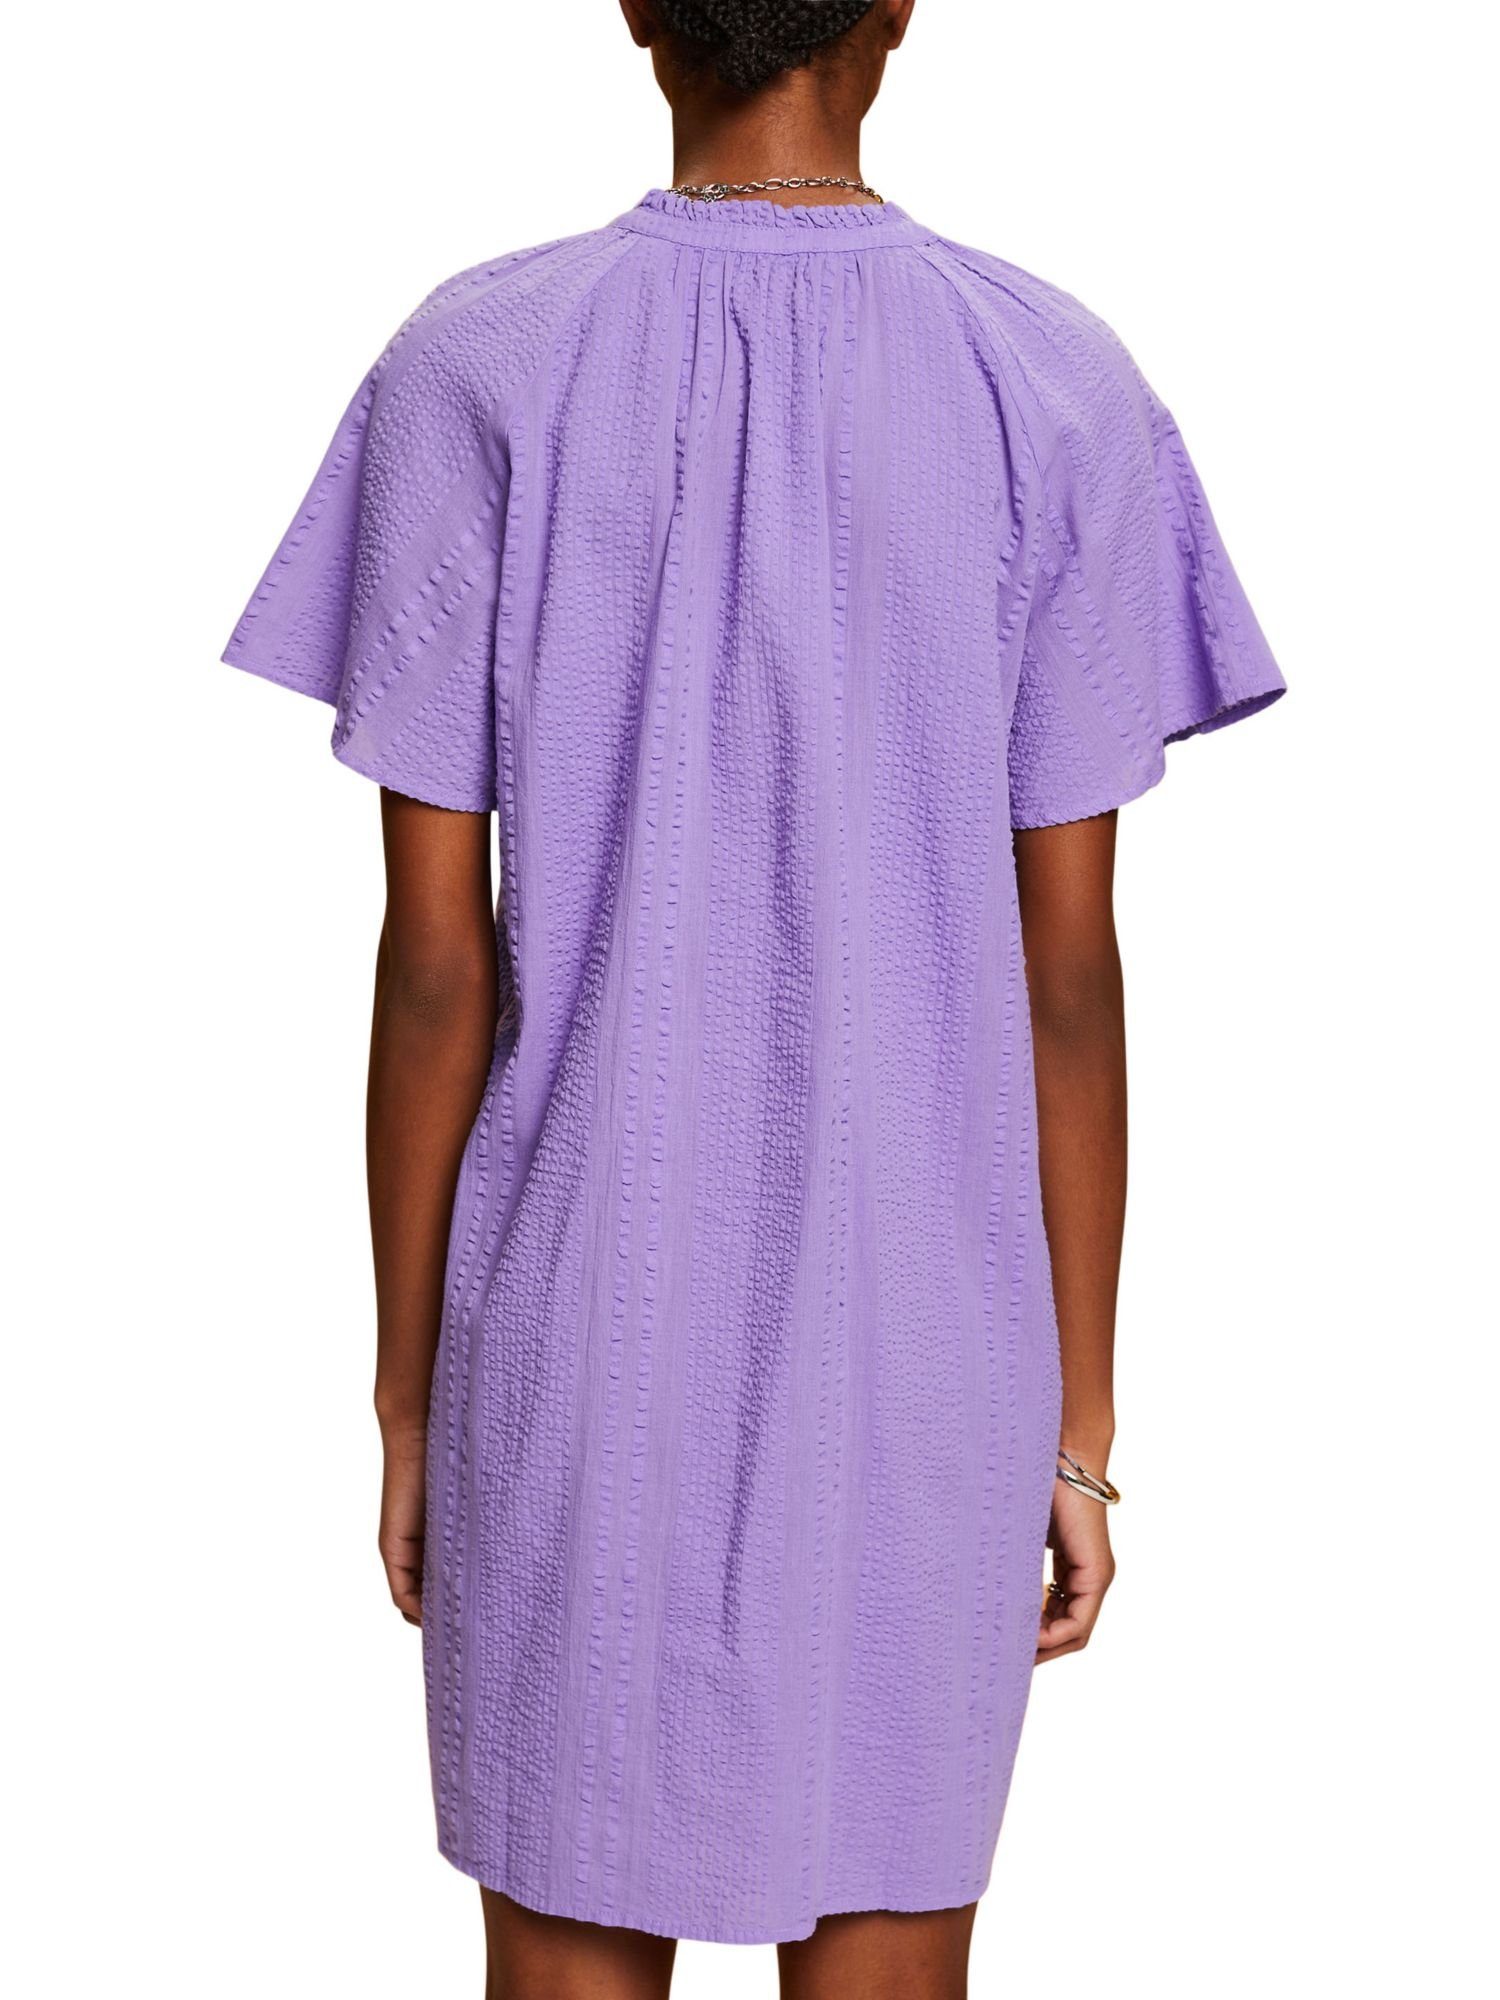 PURPLE strukturierter by Kleid aus Minikleid Baumwolle Esprit edc